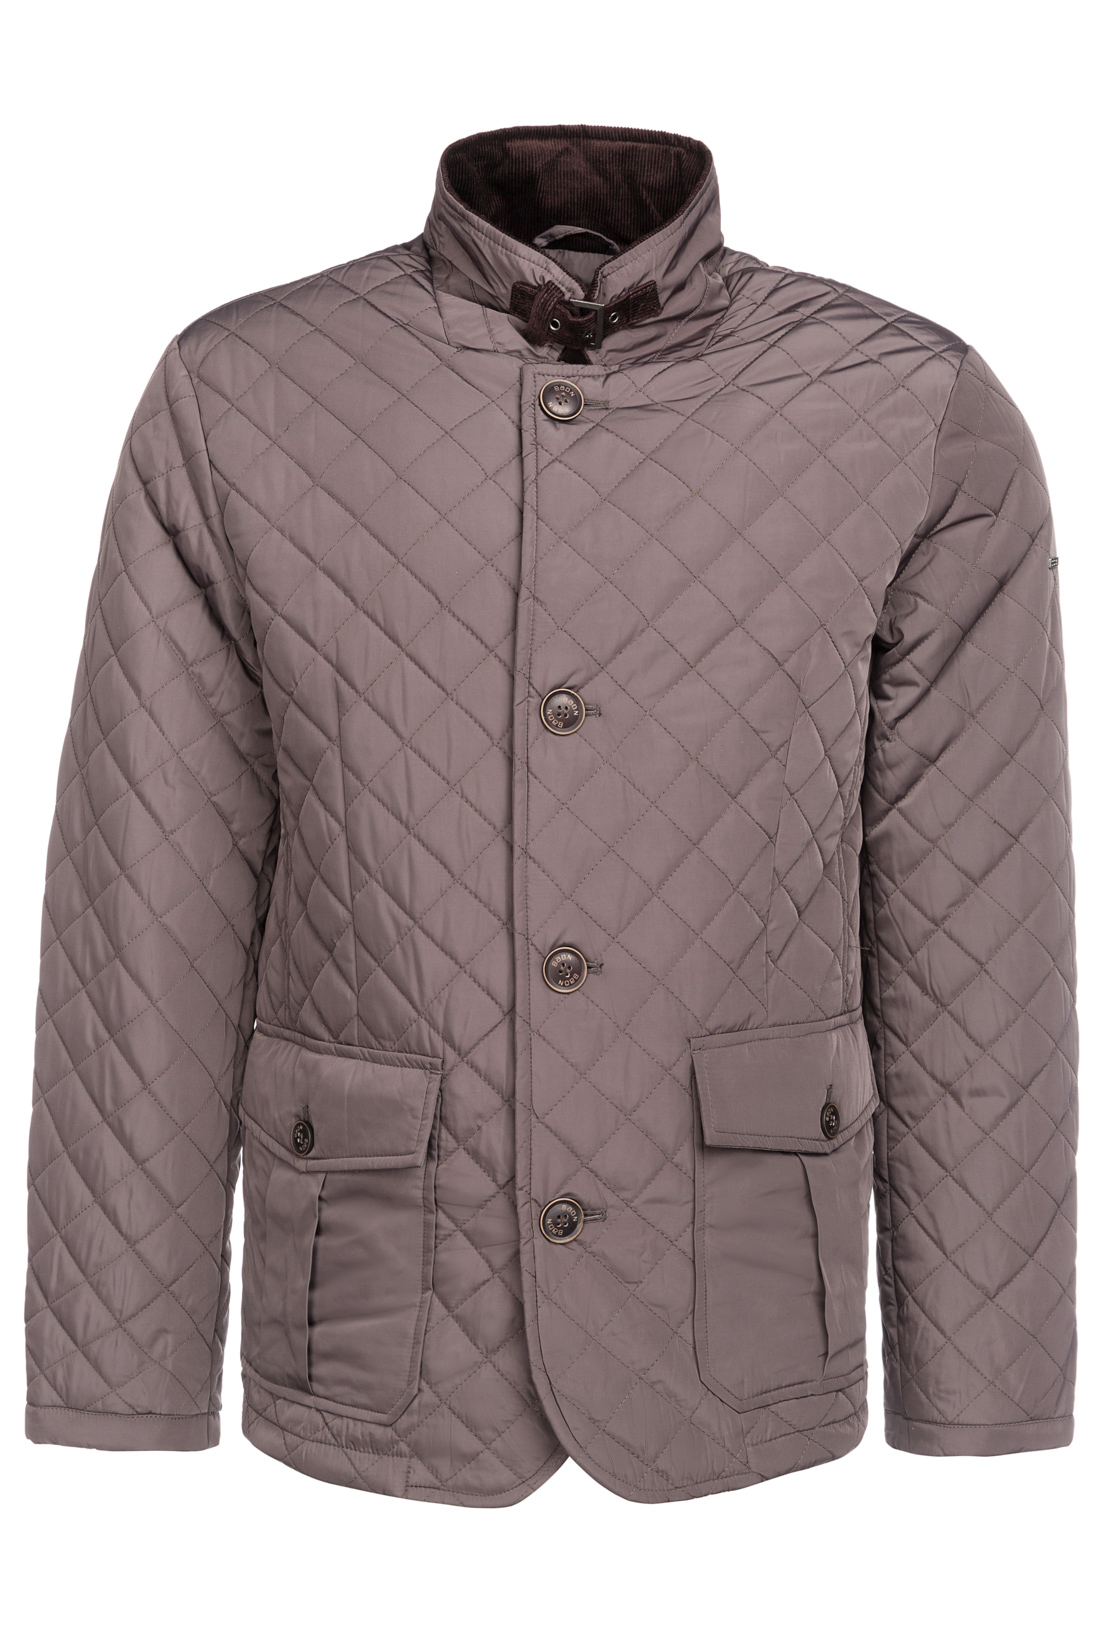 Классическая стёганая куртка (арт. baon B537023), размер L, цвет серый Классическая стёганая куртка (арт. baon B537023) - фото 4